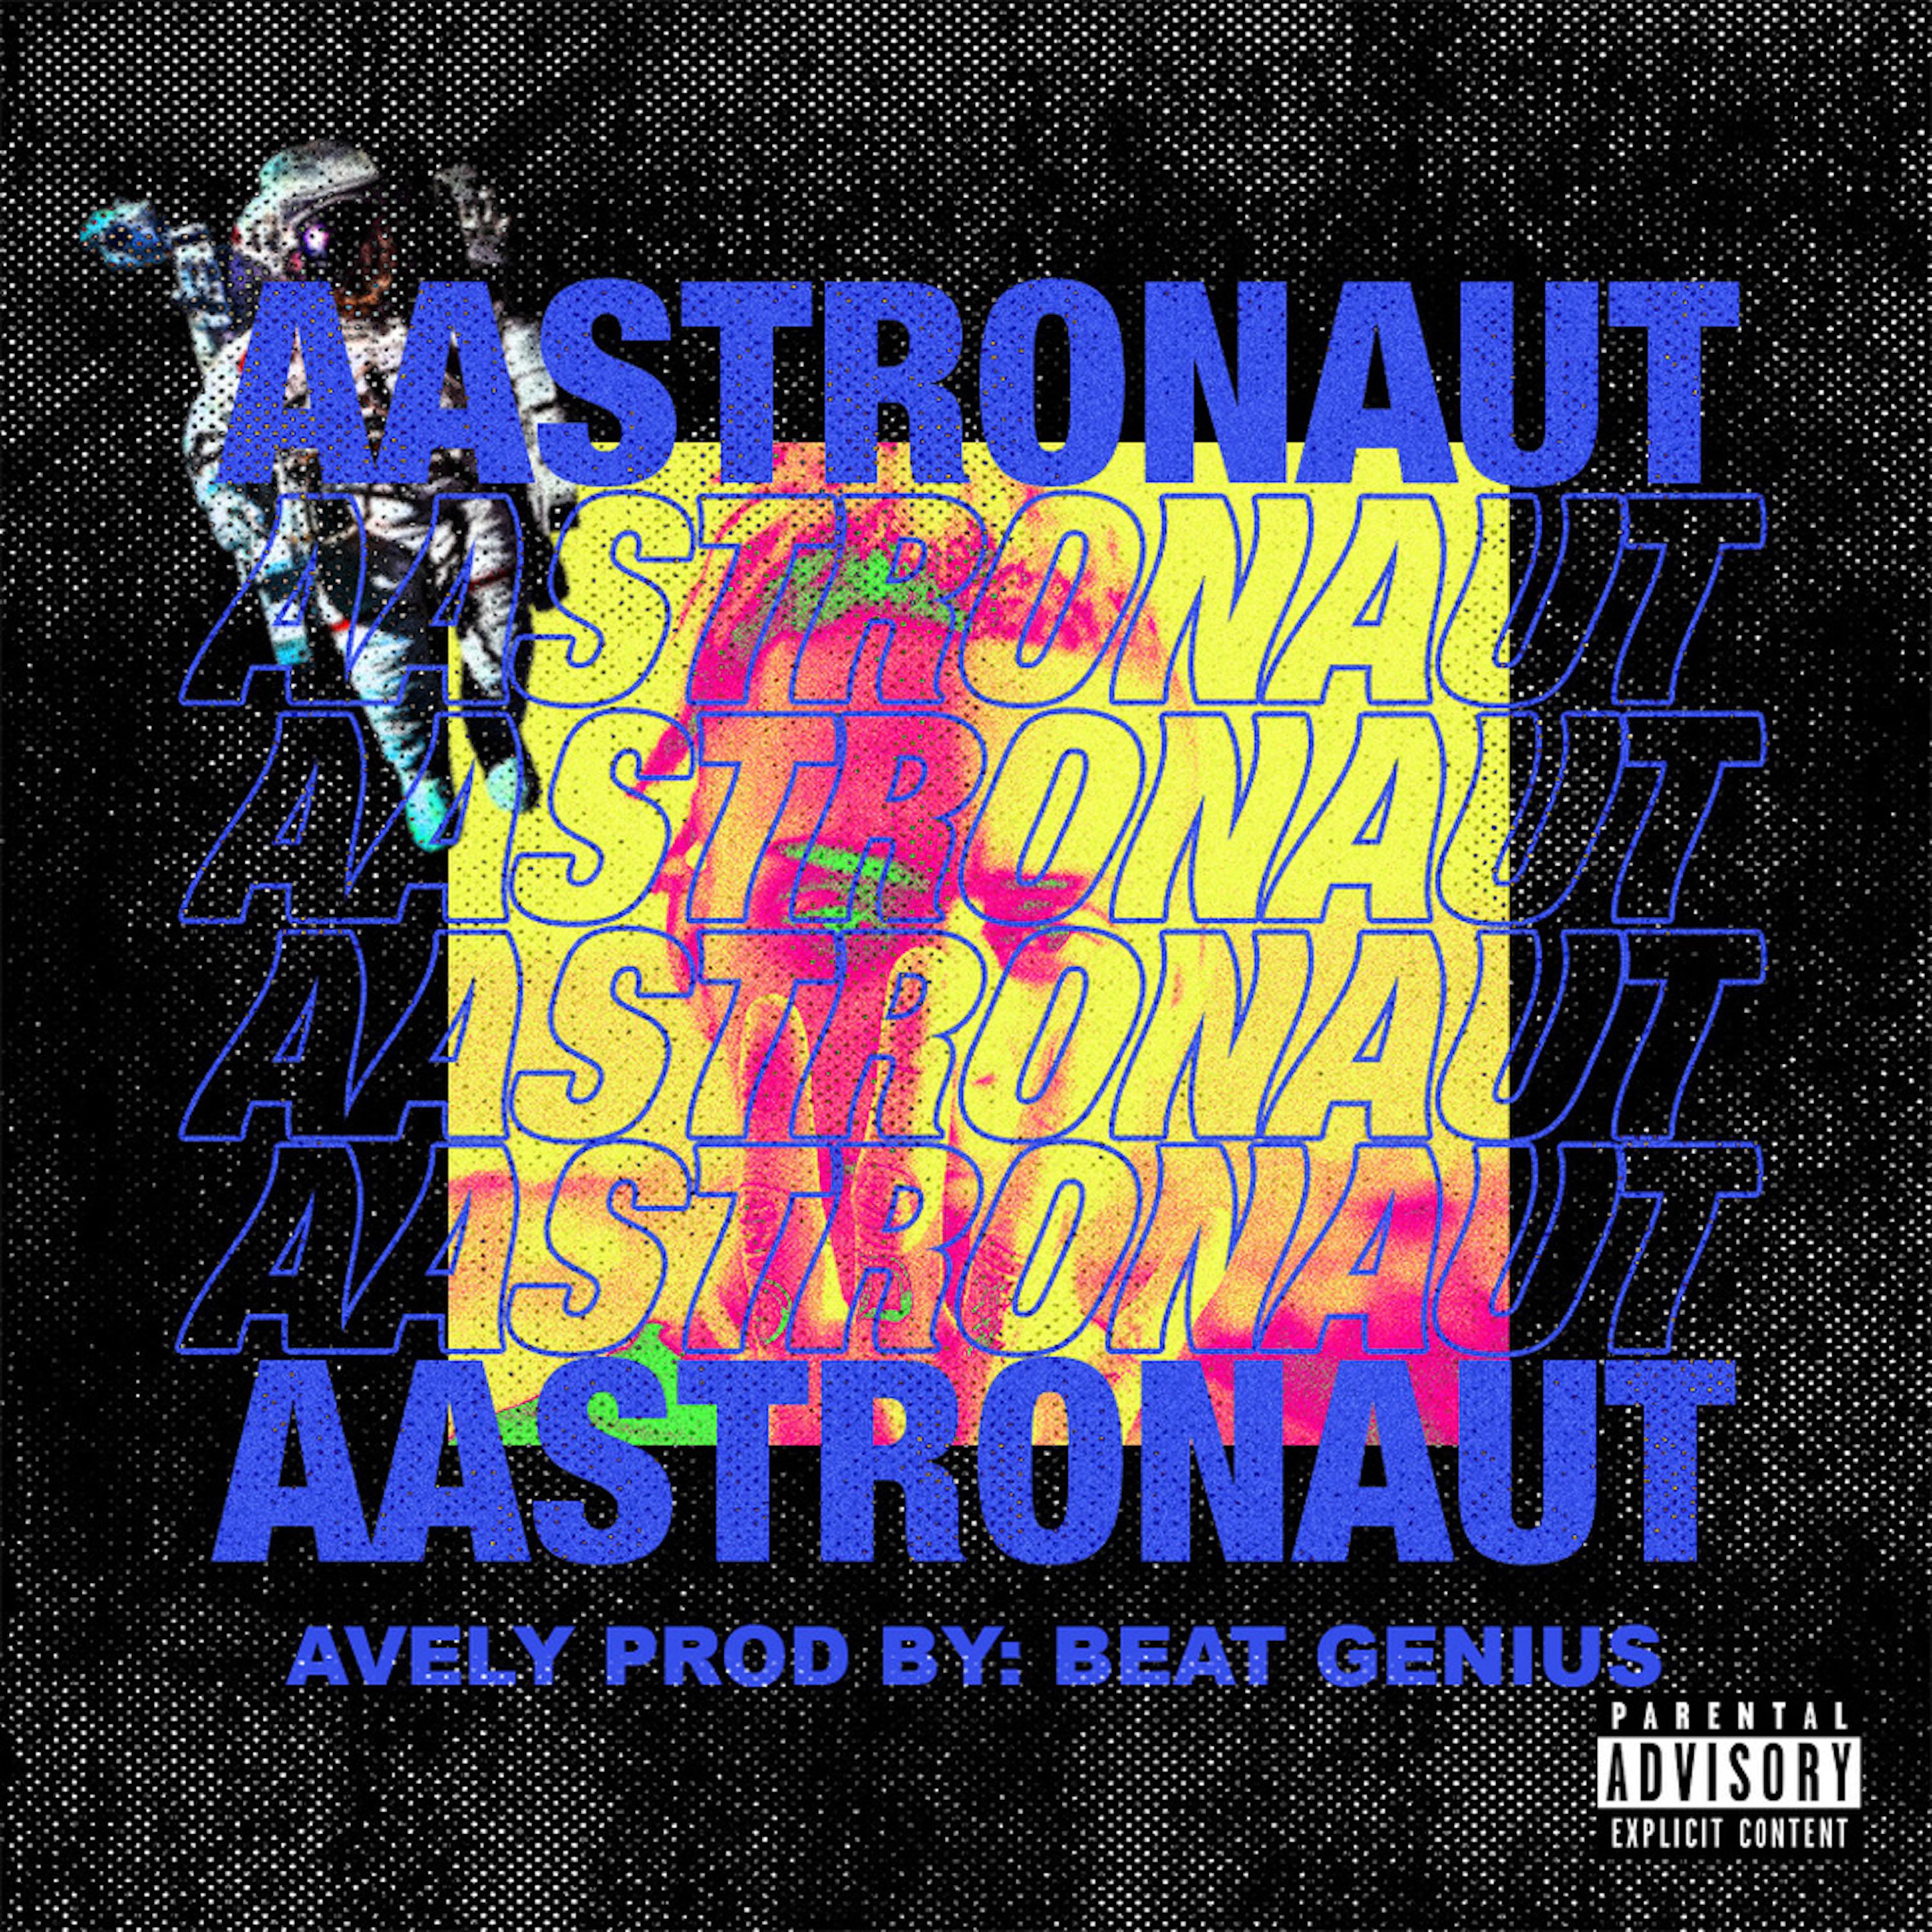 Aastronaut